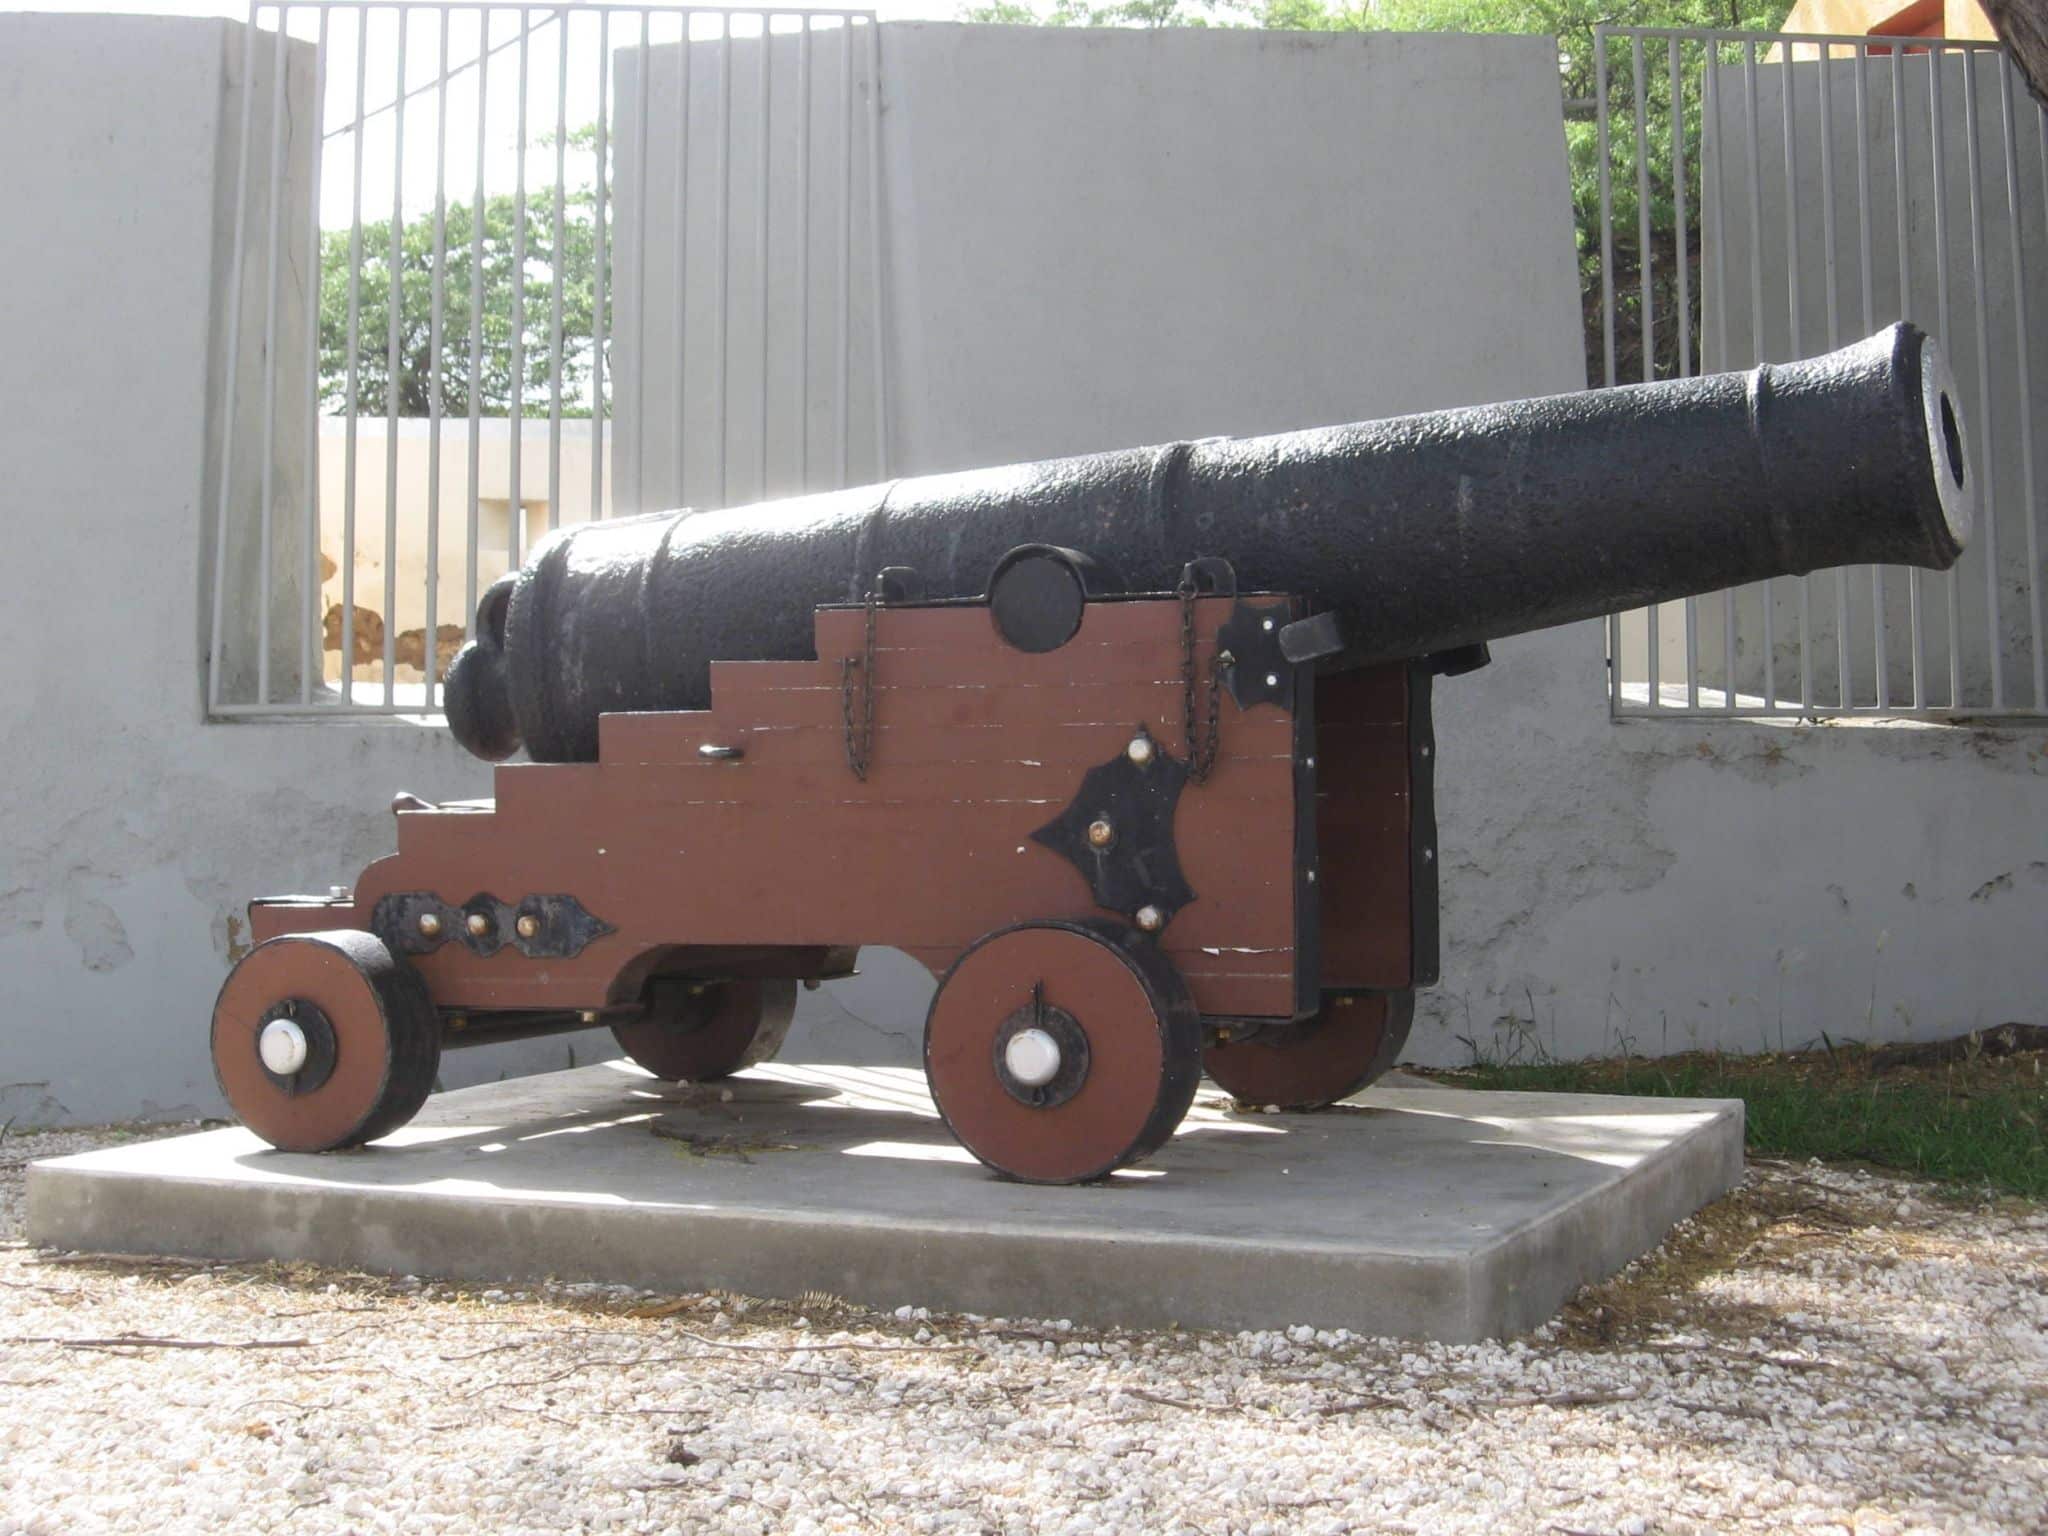 Aruba Cannon